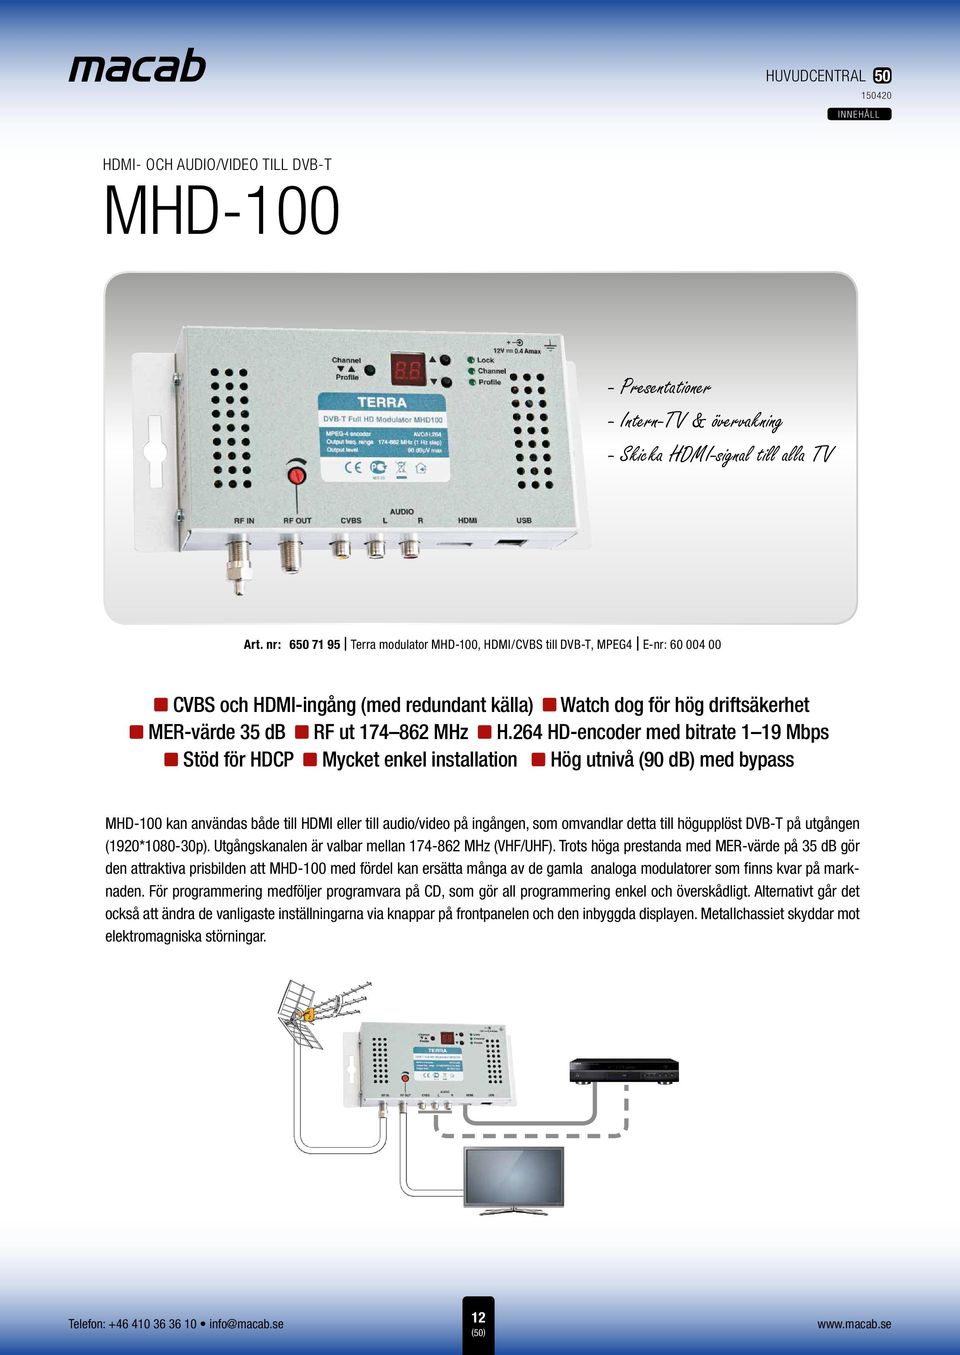 1 19 Mbps för HDCP nz enkel installation nz utnivå (90 db) med bypass MHD-100 kan användas både till HDMI eller till audio/video på ingången, som omvandlar detta till högupplöst DVB-T på utgången